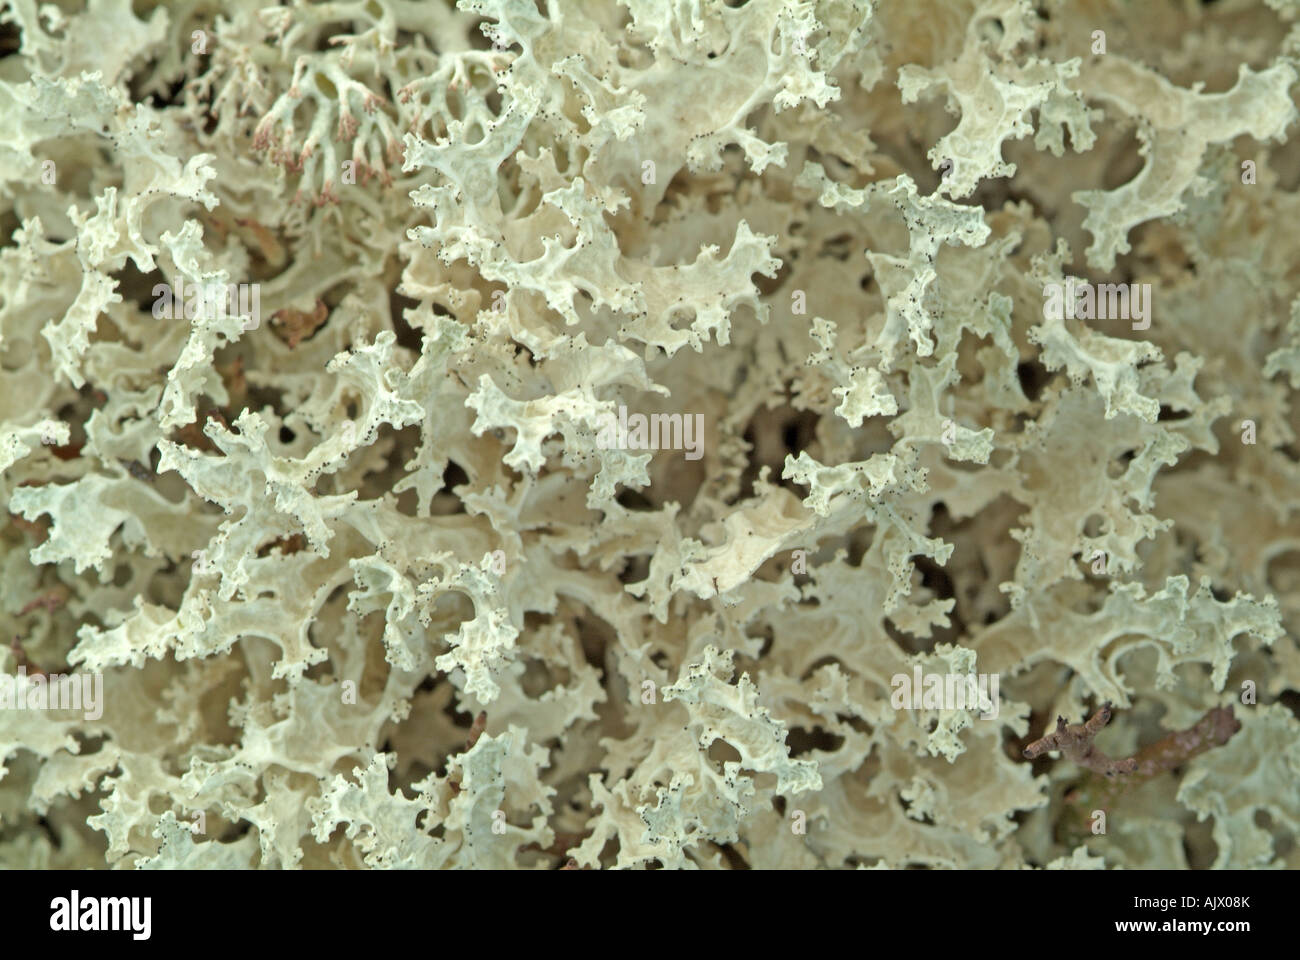 Lichen (Cetraria cucullata) Stock Photo